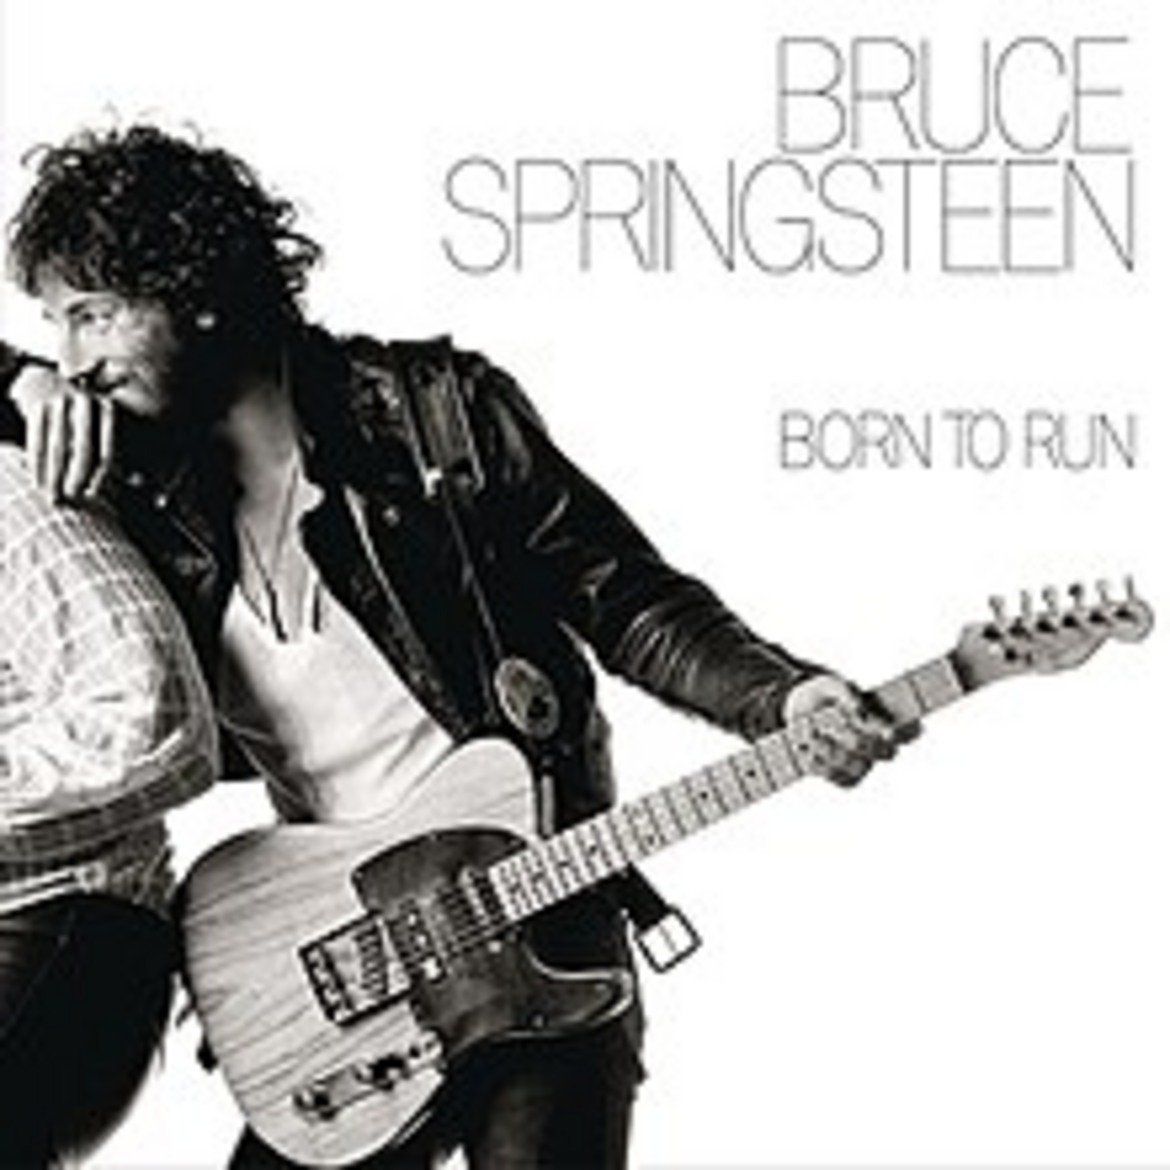  Брус Спрингстийн - Born to Run 

Само в САЩ албумът е разпродаден в над 6 млн. копия, а списание Rolling Stone го определя като "великолепен". Той влиза в класацията за 20-те най-страхотни албума на всички времена. И въпреки всички награди и суперлативи, Спрингстийн искрено ненавижда "Born to Run".

Немалка част от тази ненавист е заради времето, което изпълнителят отделя по създаването на песните. Само едноименният пилотен сингъл отнема шест месеца работа, а според музикантите, с които Брус записва, другите песни също гълтат невероятно много време, за да бъдат записани в завършен вид. Накрая Спрингстийн е толкова разочарован от резултата, че го определя като "пълен боклук".